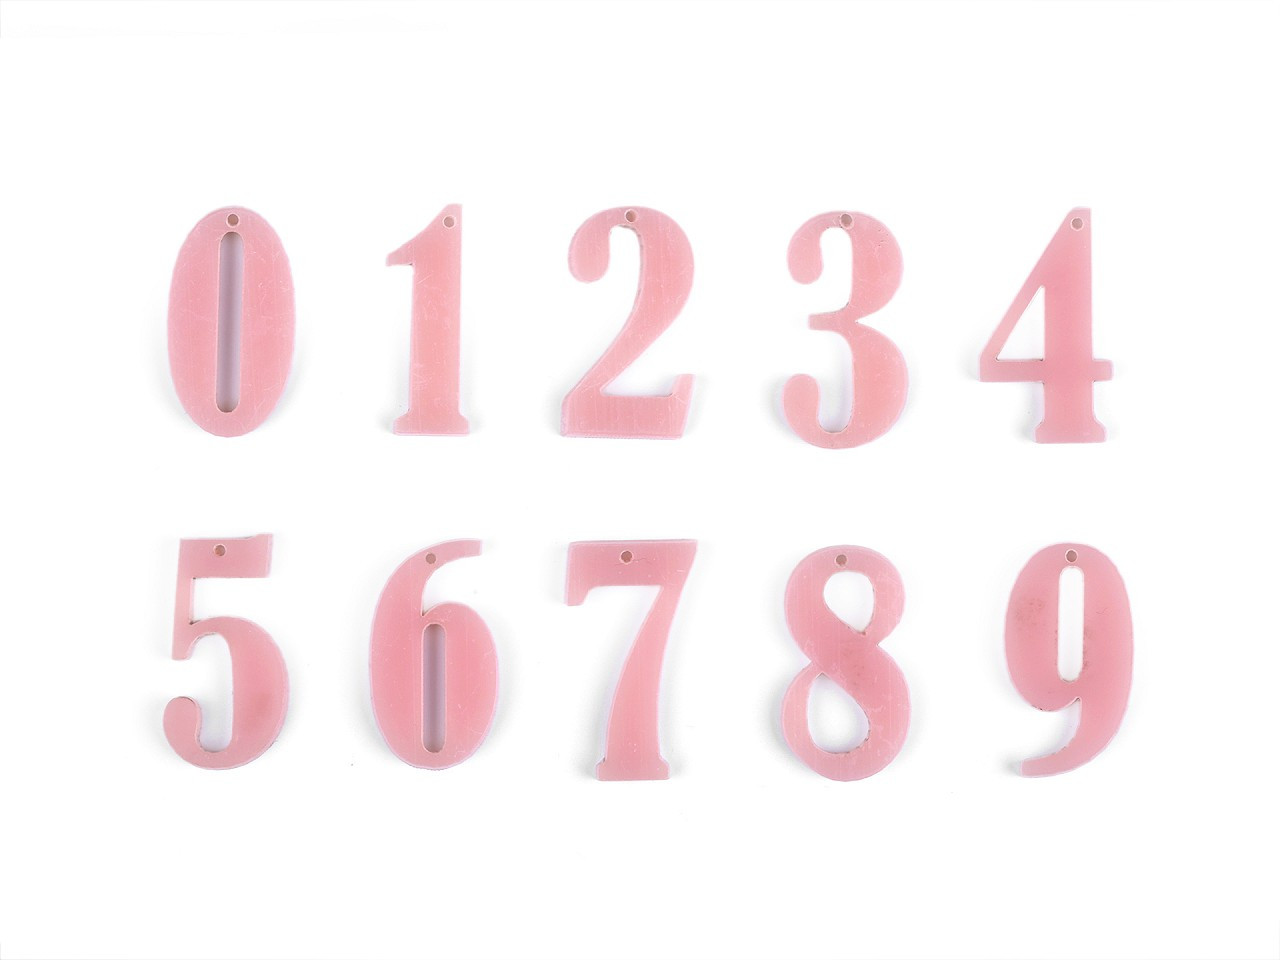 Čísla k přišití, zavěšení, nalepení; sada čísel od 0-9, barva 2 pudrová